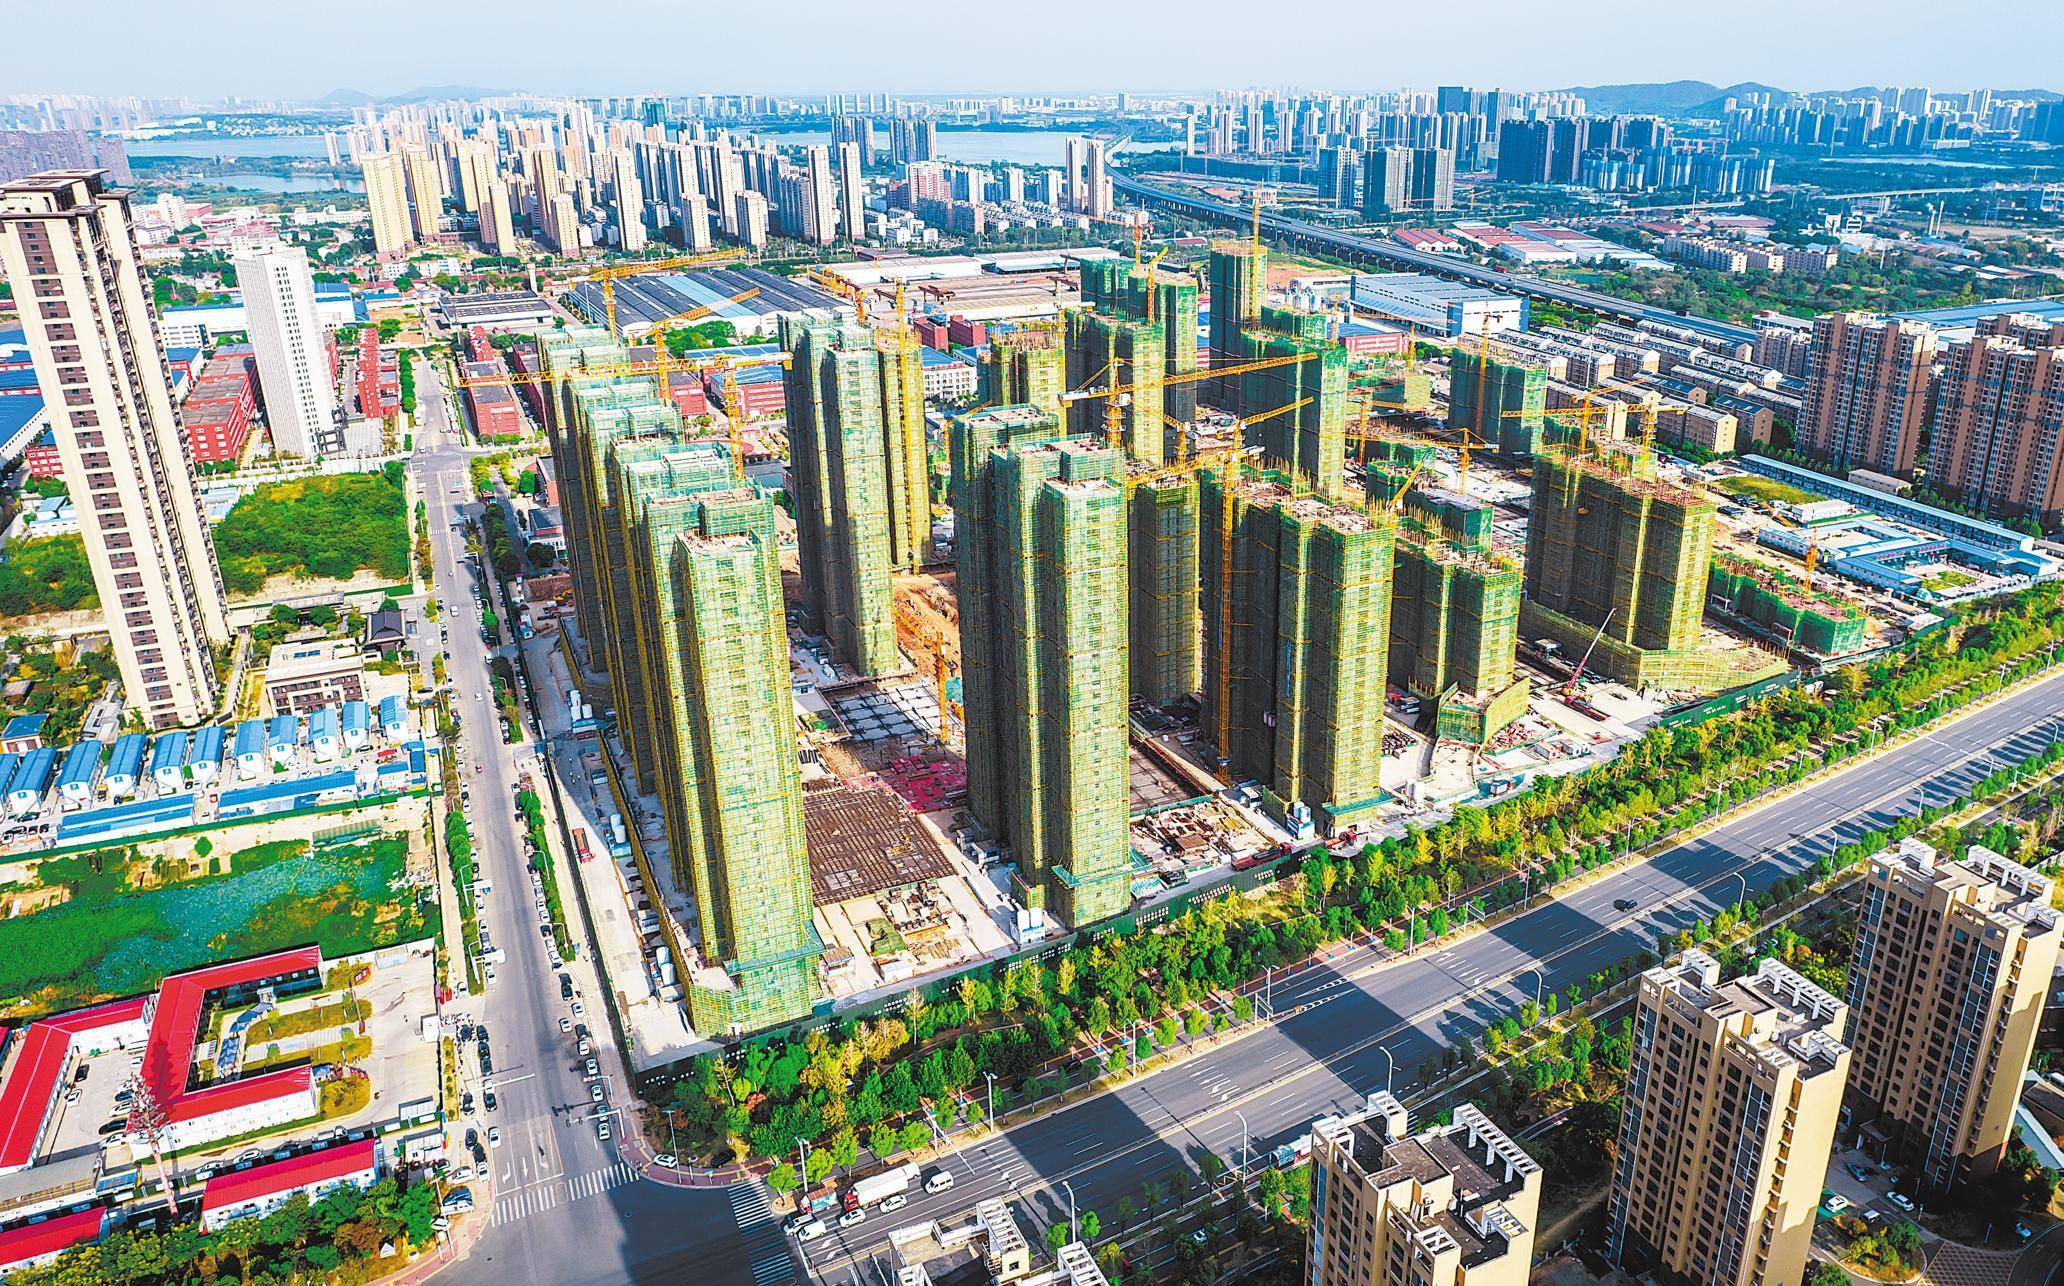 该项目位于江夏经济开发区大桥新区邢远长村,总建筑面积80多万平方米